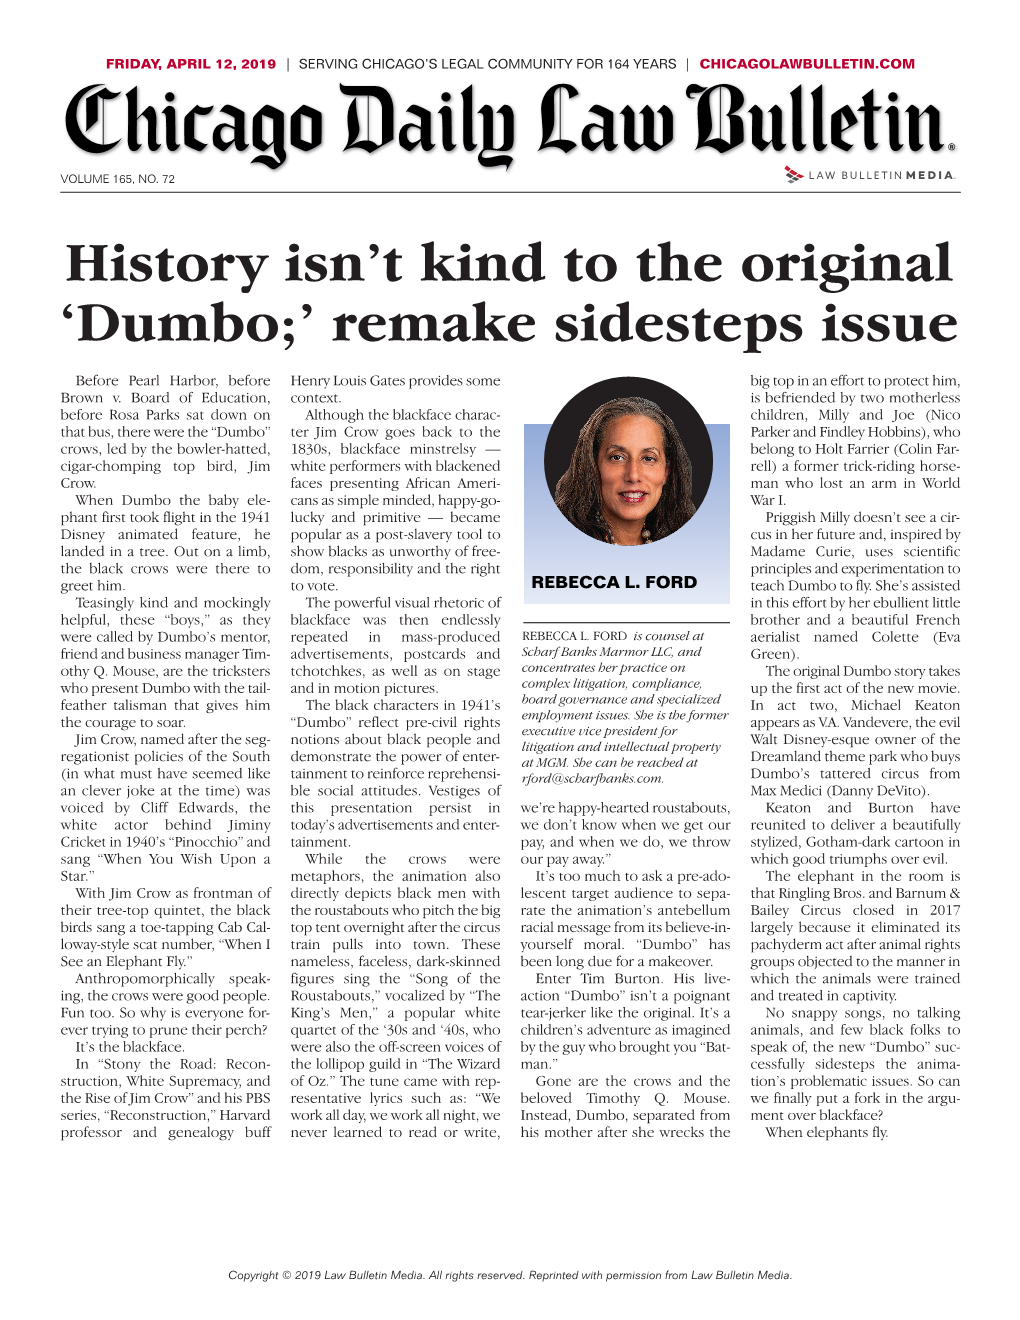 Dumbo;’ Remake Sidesteps Issue